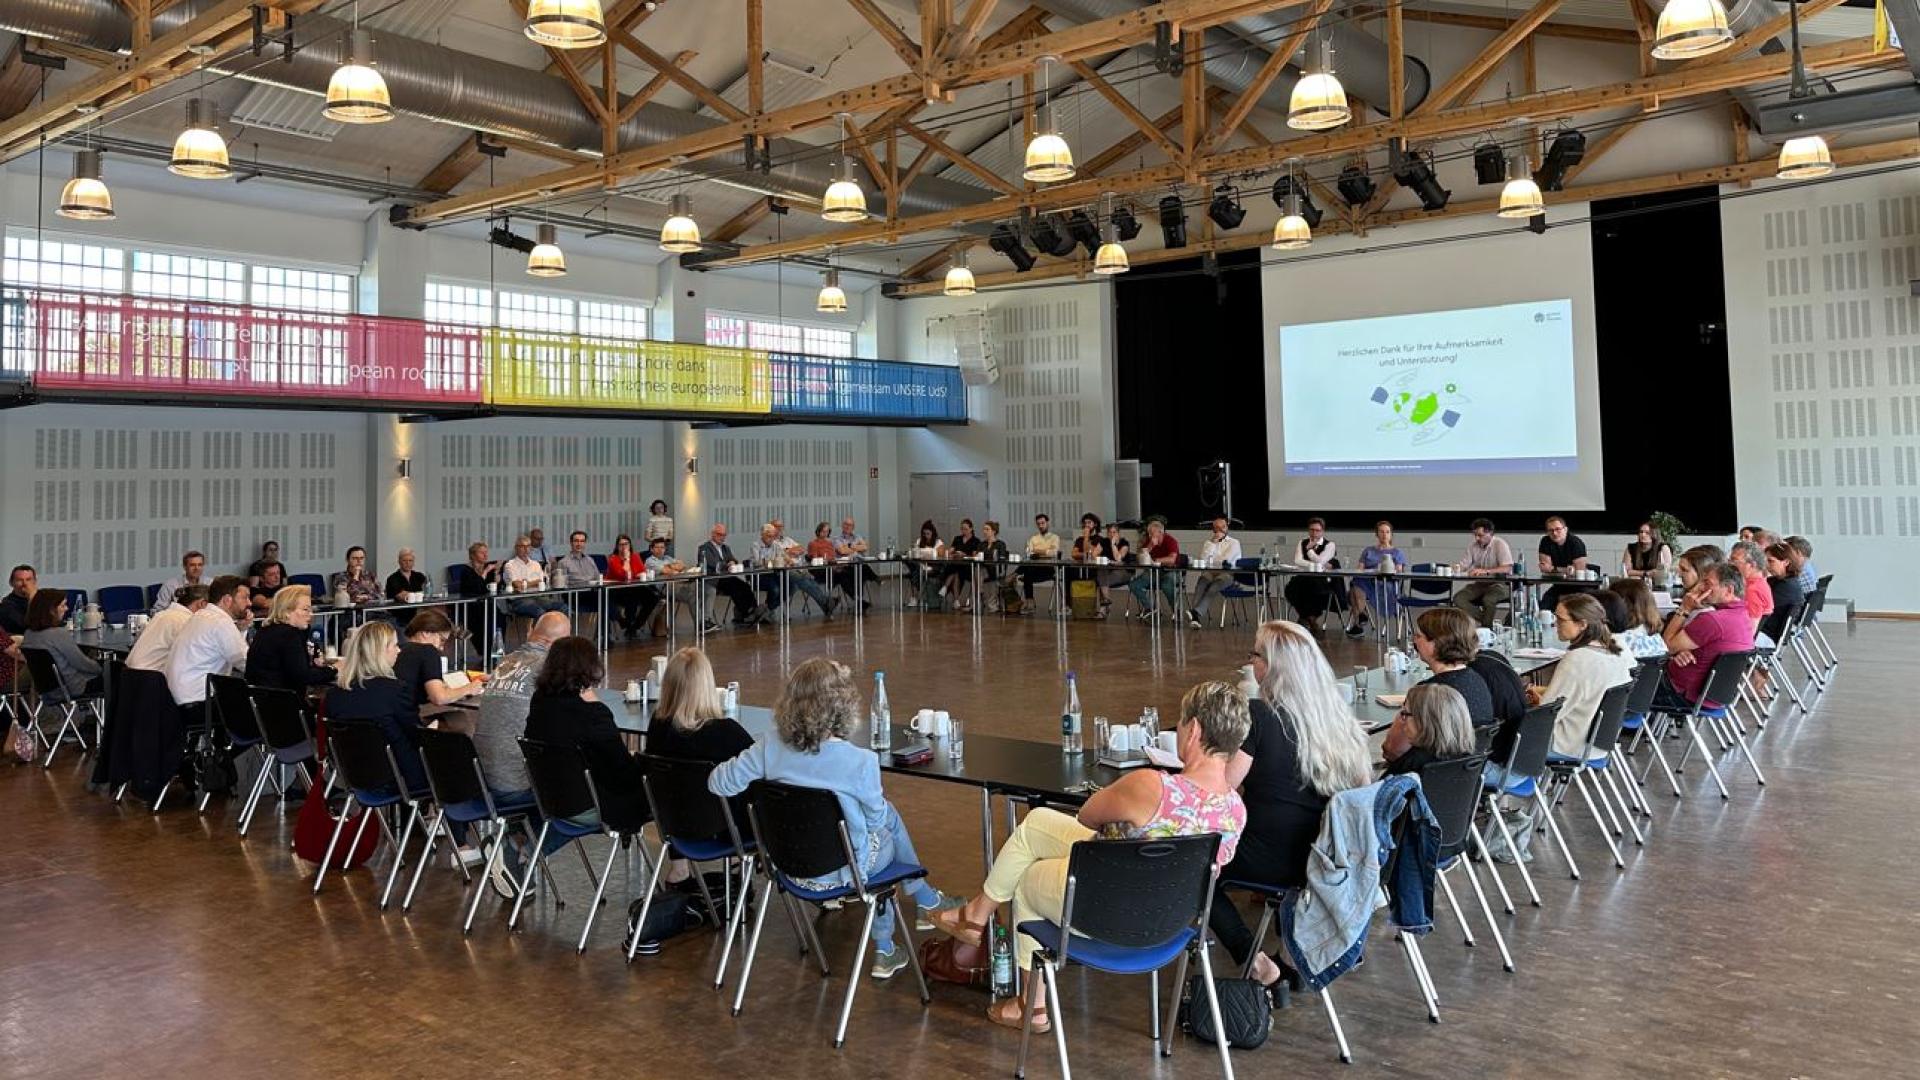 Ein Bild aus der Aula der Universität des Saarlandes auf dem 60 Personen in einem Quadrat an tischen sitzen